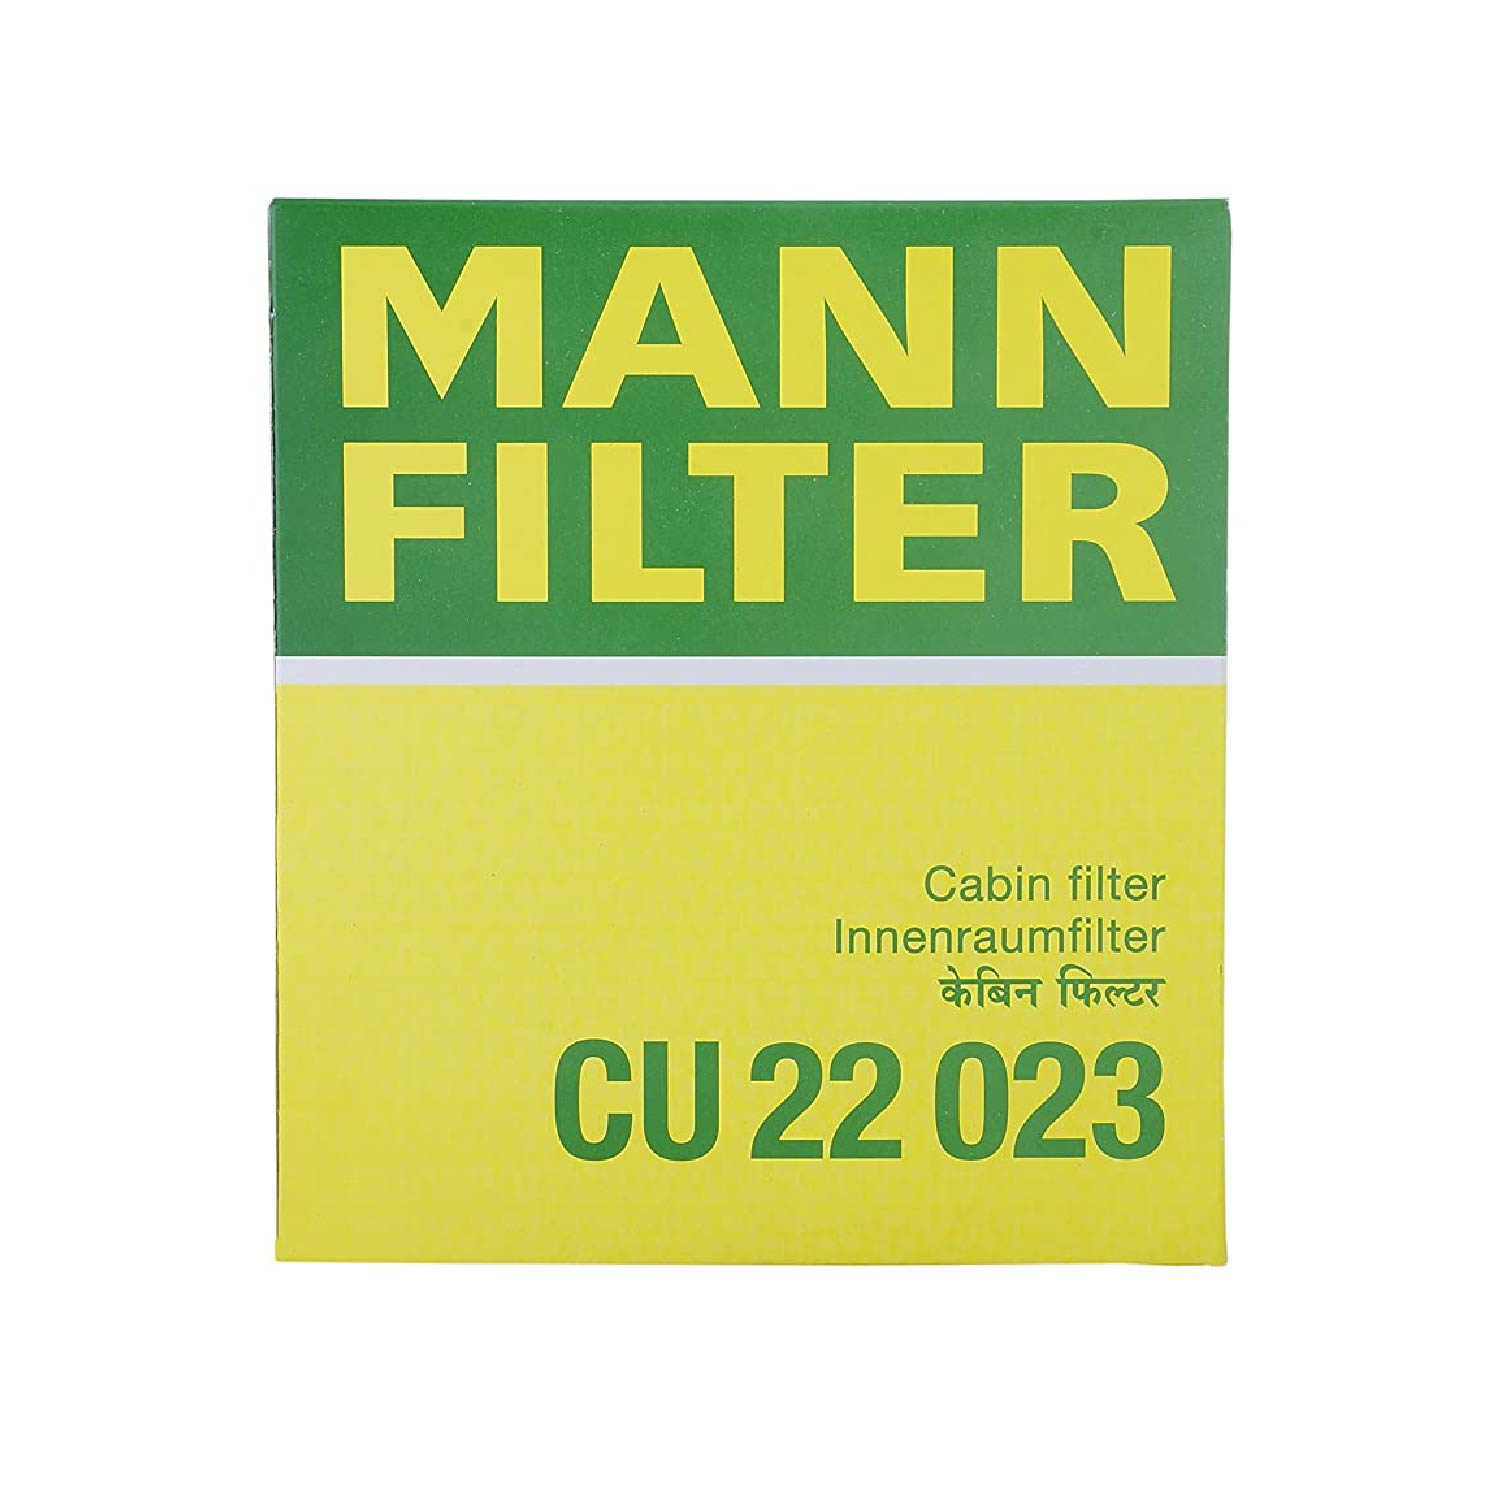 Mann Filter Or Ac Filter For Maruti Ciaz, Dzire 2015-2017 And Ertiga Shvs, Swift 2015-2017, S Cross